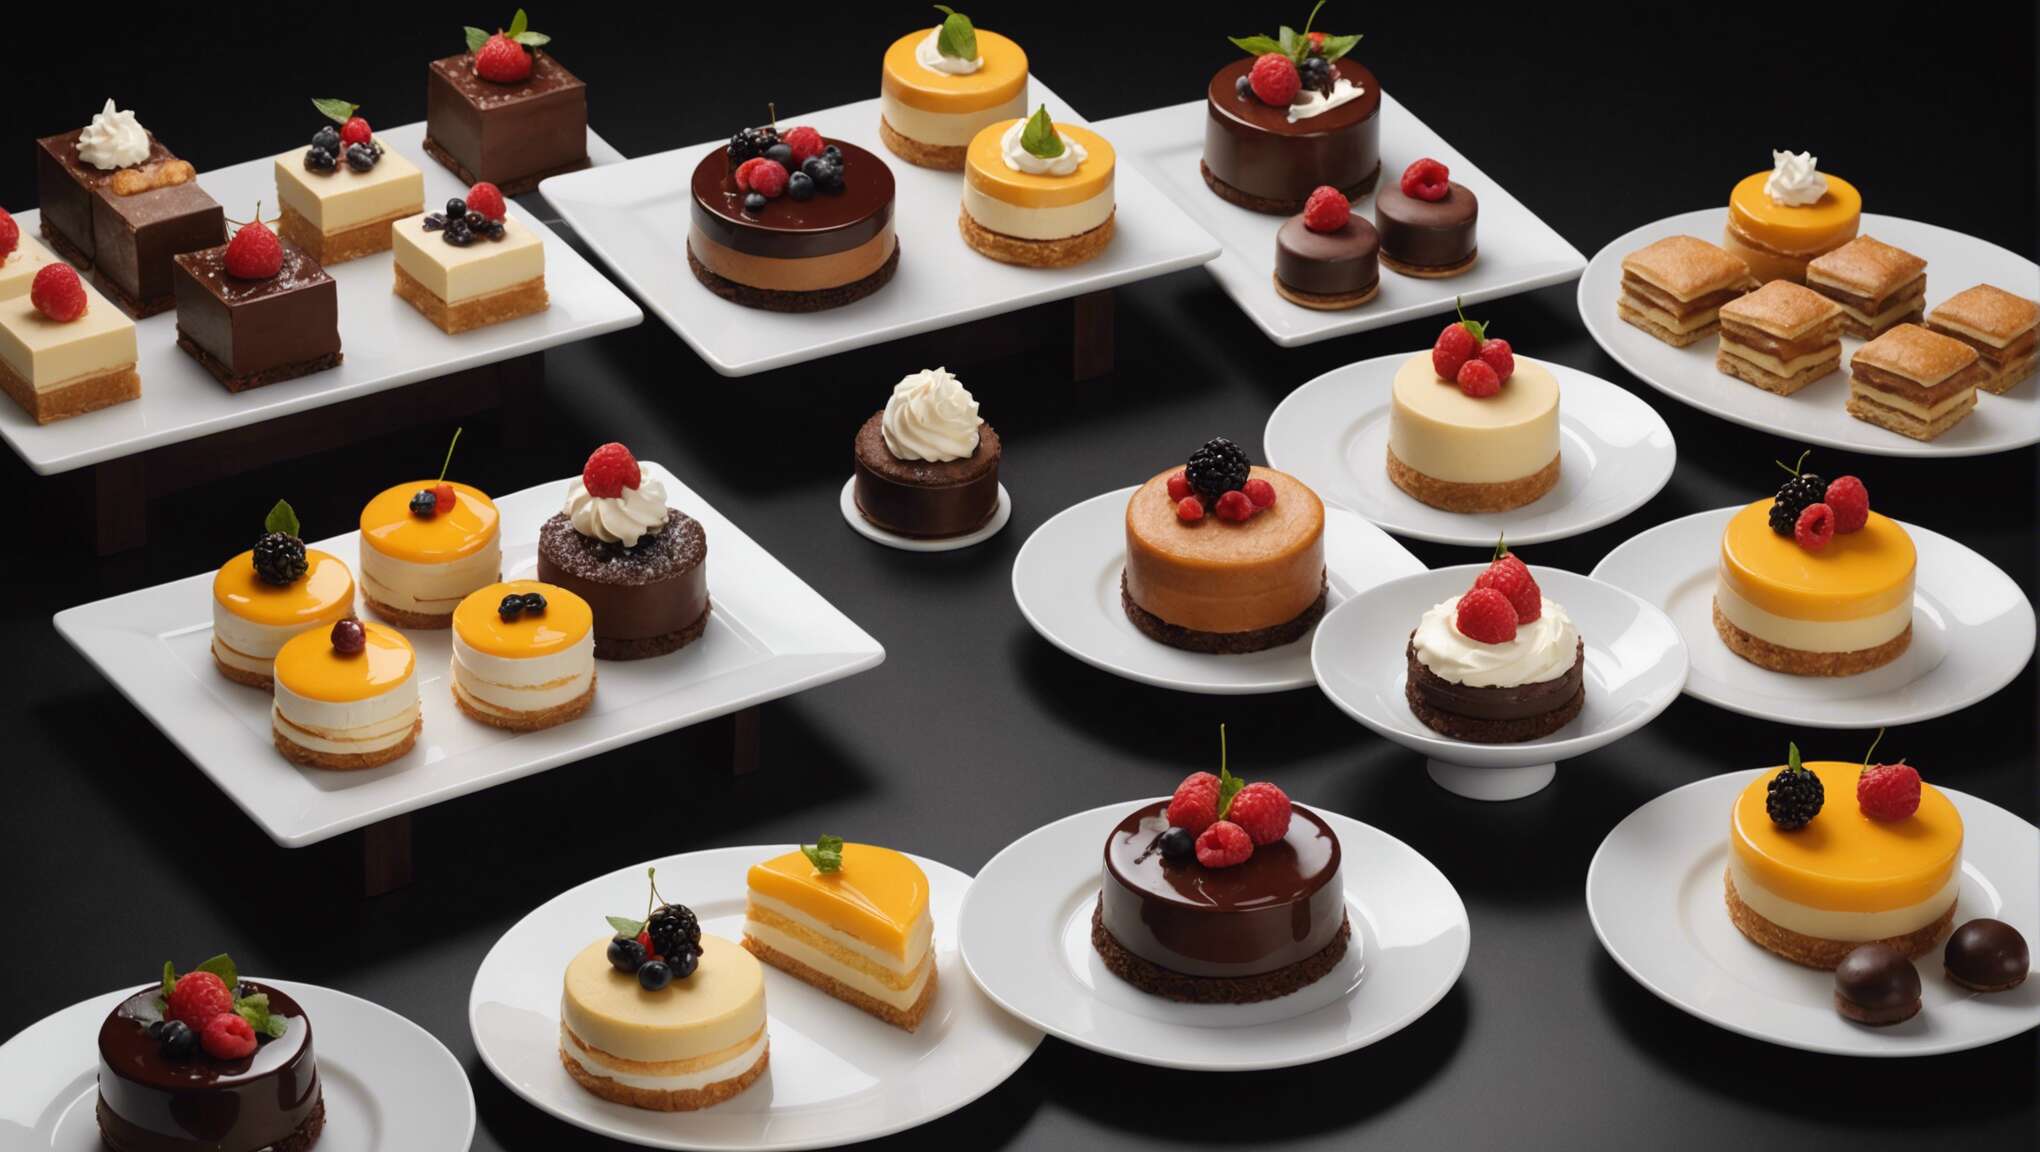 Les merveilleux desserts de Yann Couvreur : un délice à découvrir